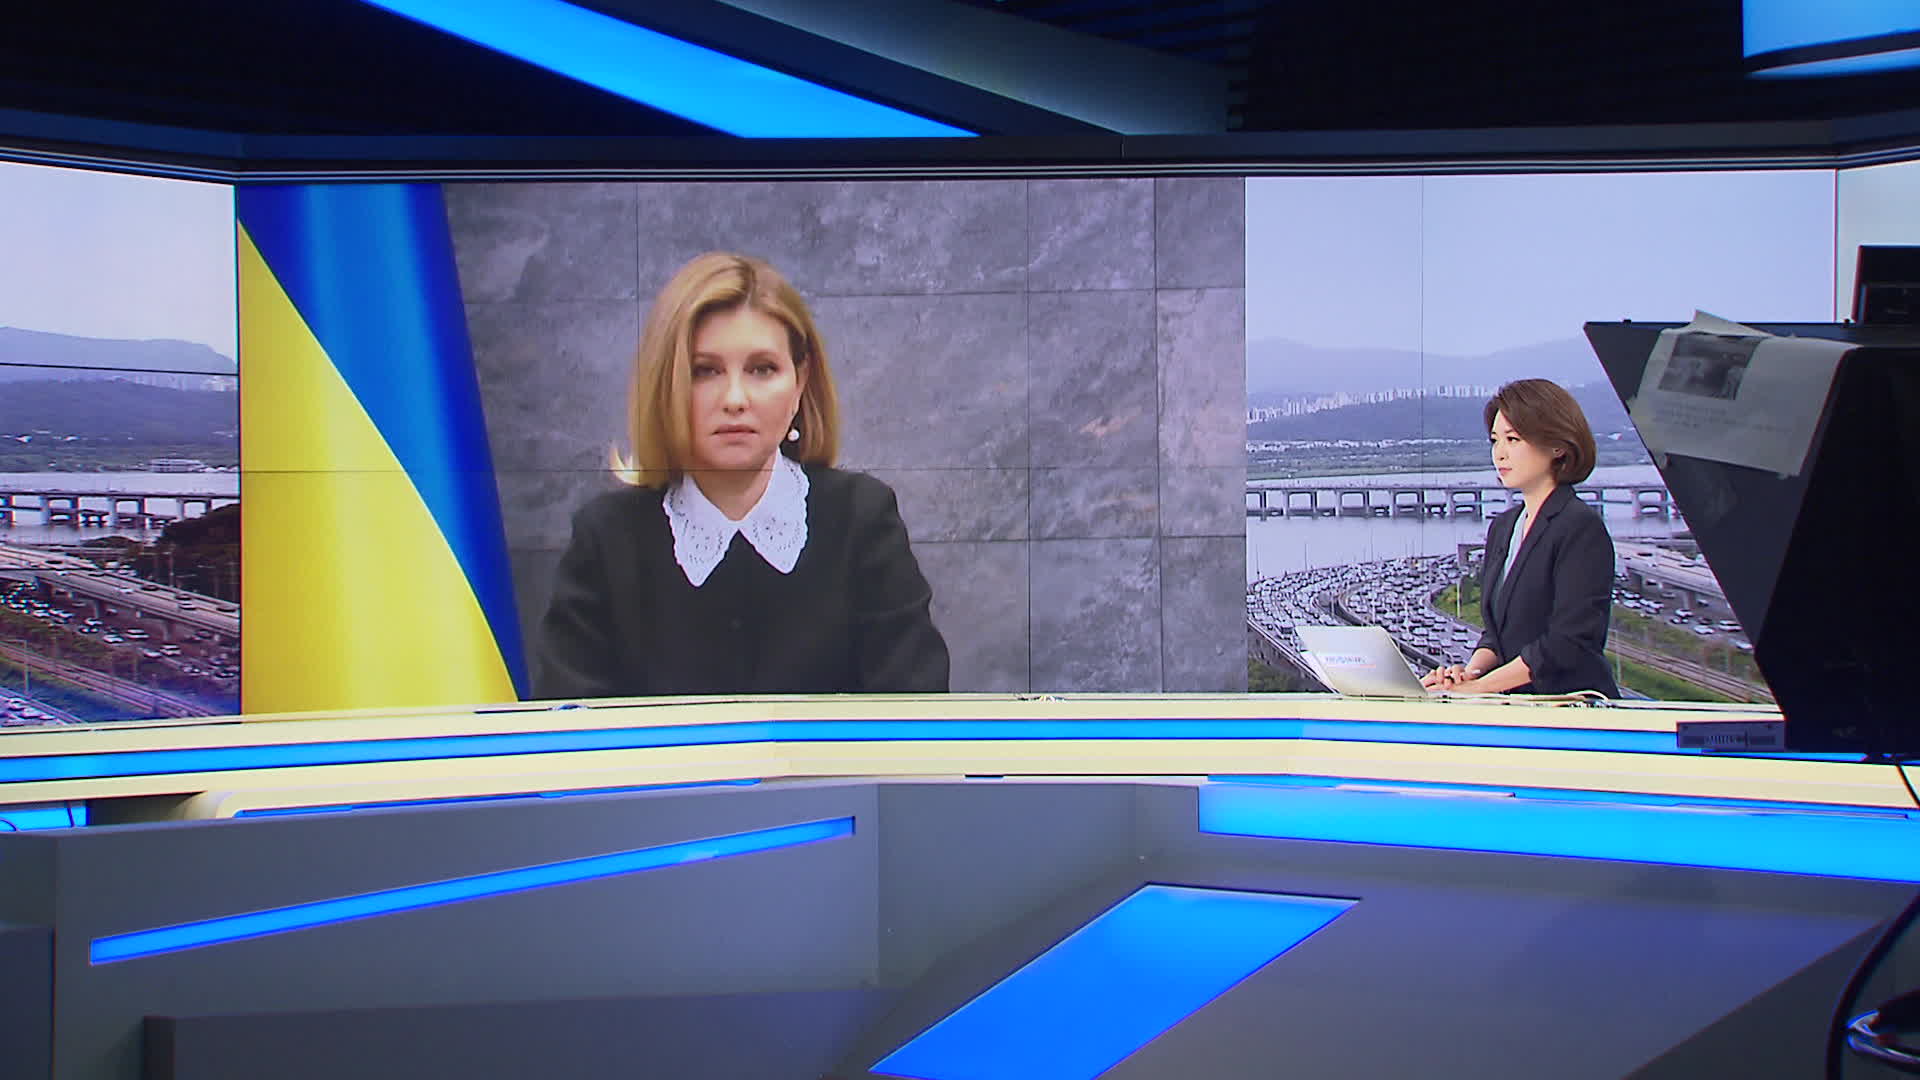 지난 12일, 올레나 젤렌스카 우크라이나 영부인이 KBS와 화상 인터뷰를 하는 모습